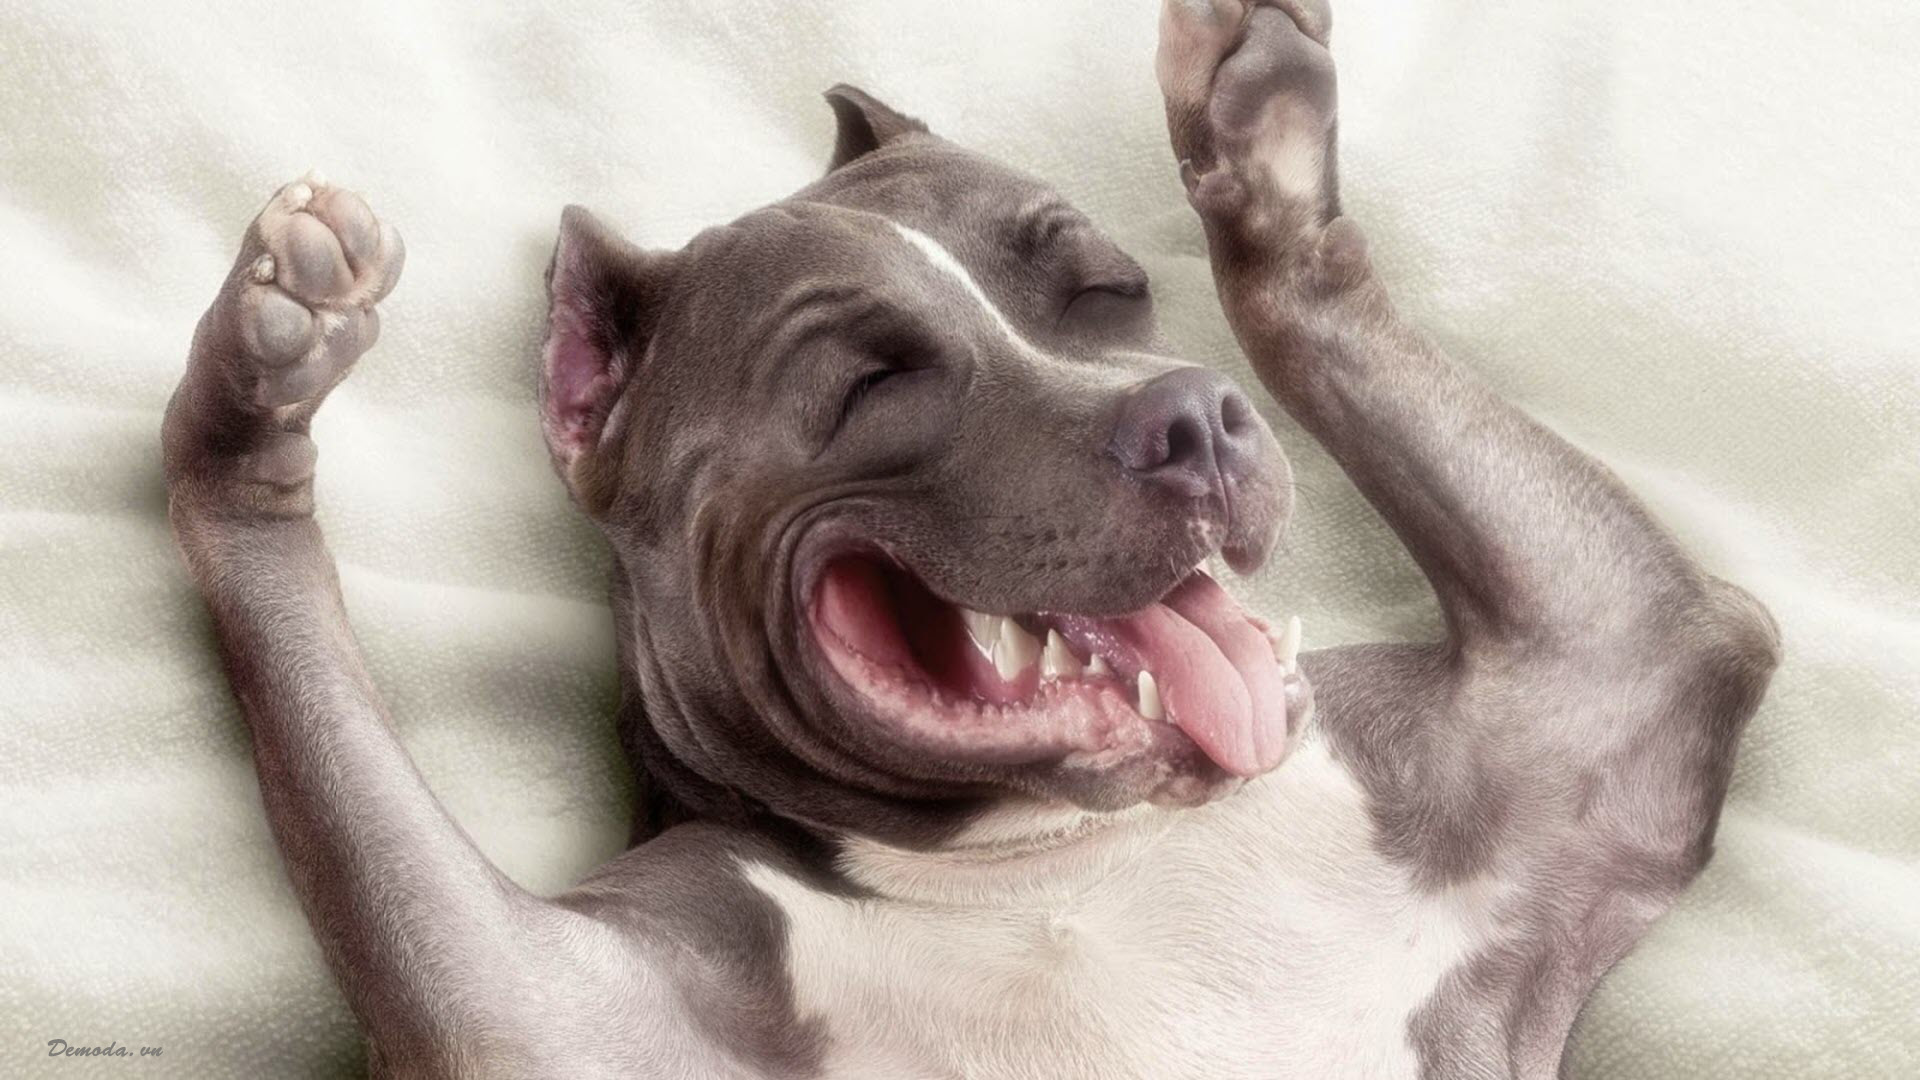 Bạn có biết rằng chó cũng có thể vui vẻ và hài hước? Đây là hình ảnh của một con chó bựa với một gương mặt ngộ nghĩnh, chúng ta không thể nhịn được cười. Hãy xem nó để cảm nhận sự ngộ nghĩnh của chúng.